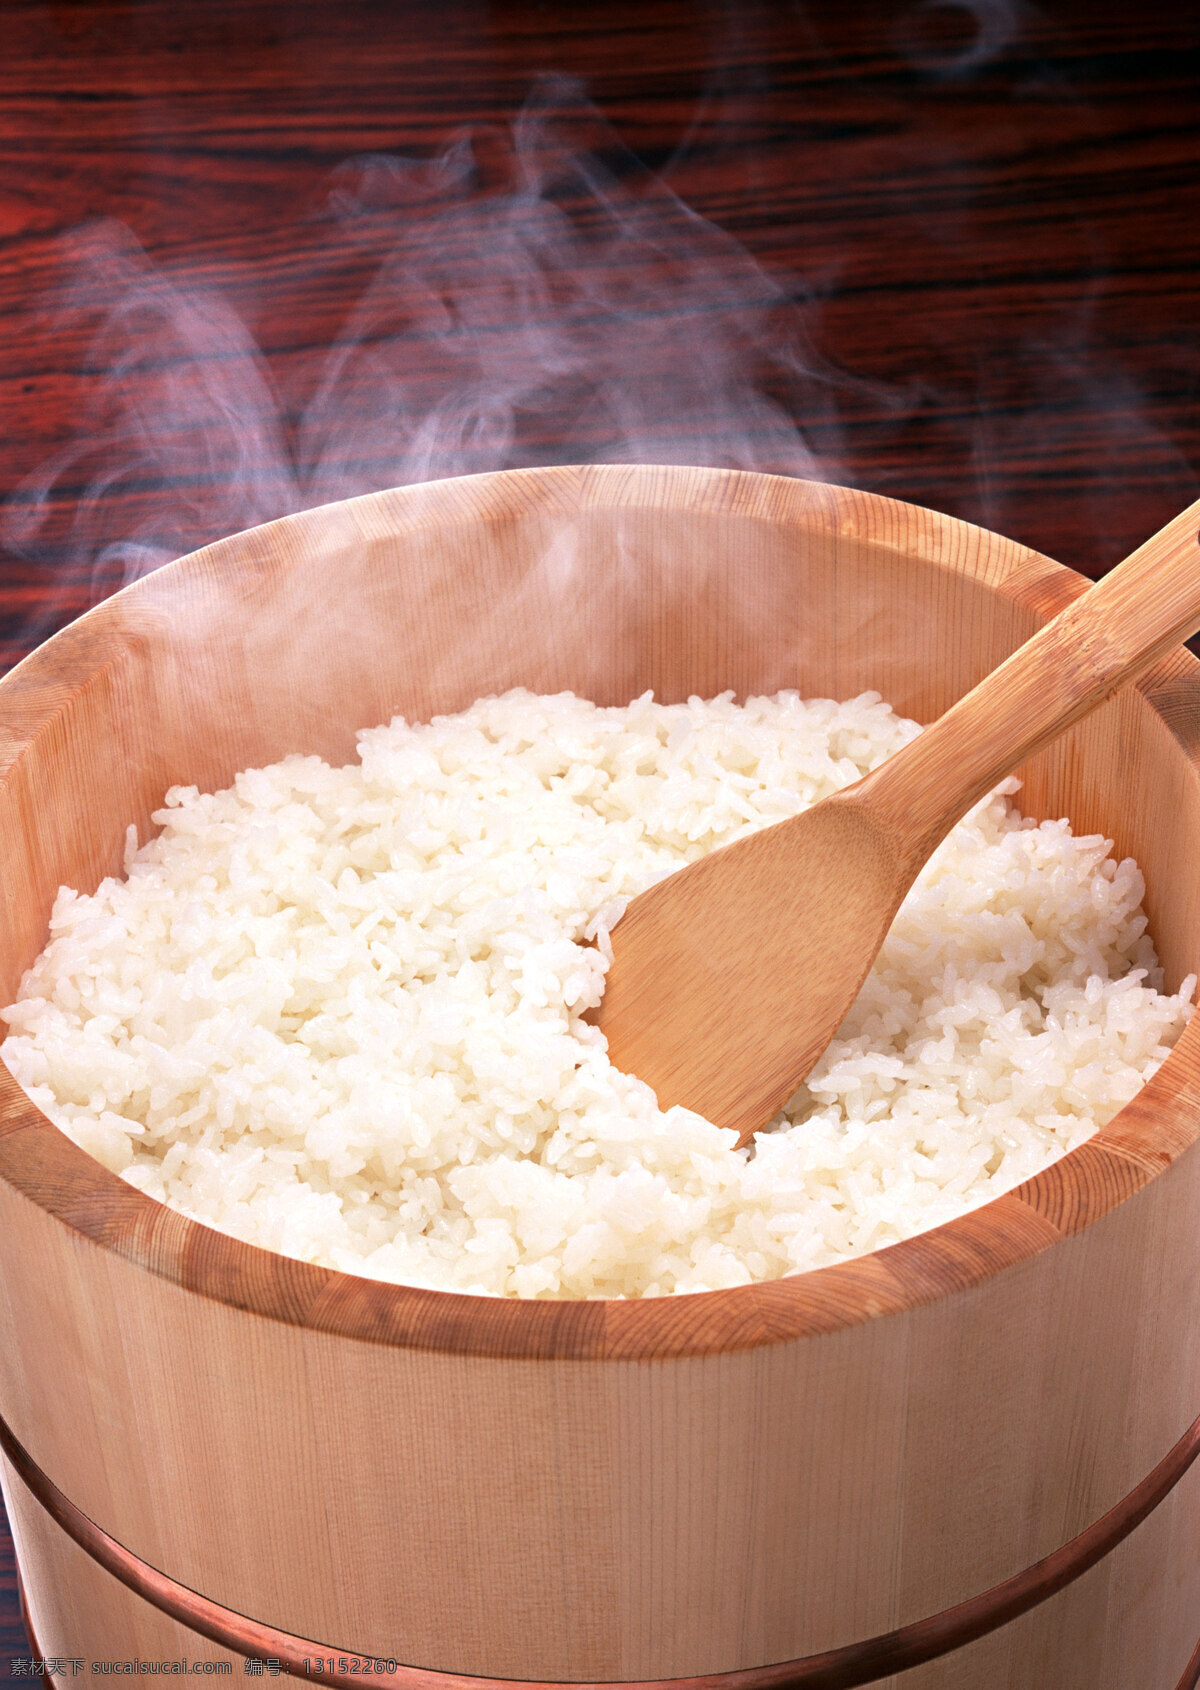 大米饭 大米 珍珠米 东北大米 粮食 食物 食品 餐饮美食 传统美食